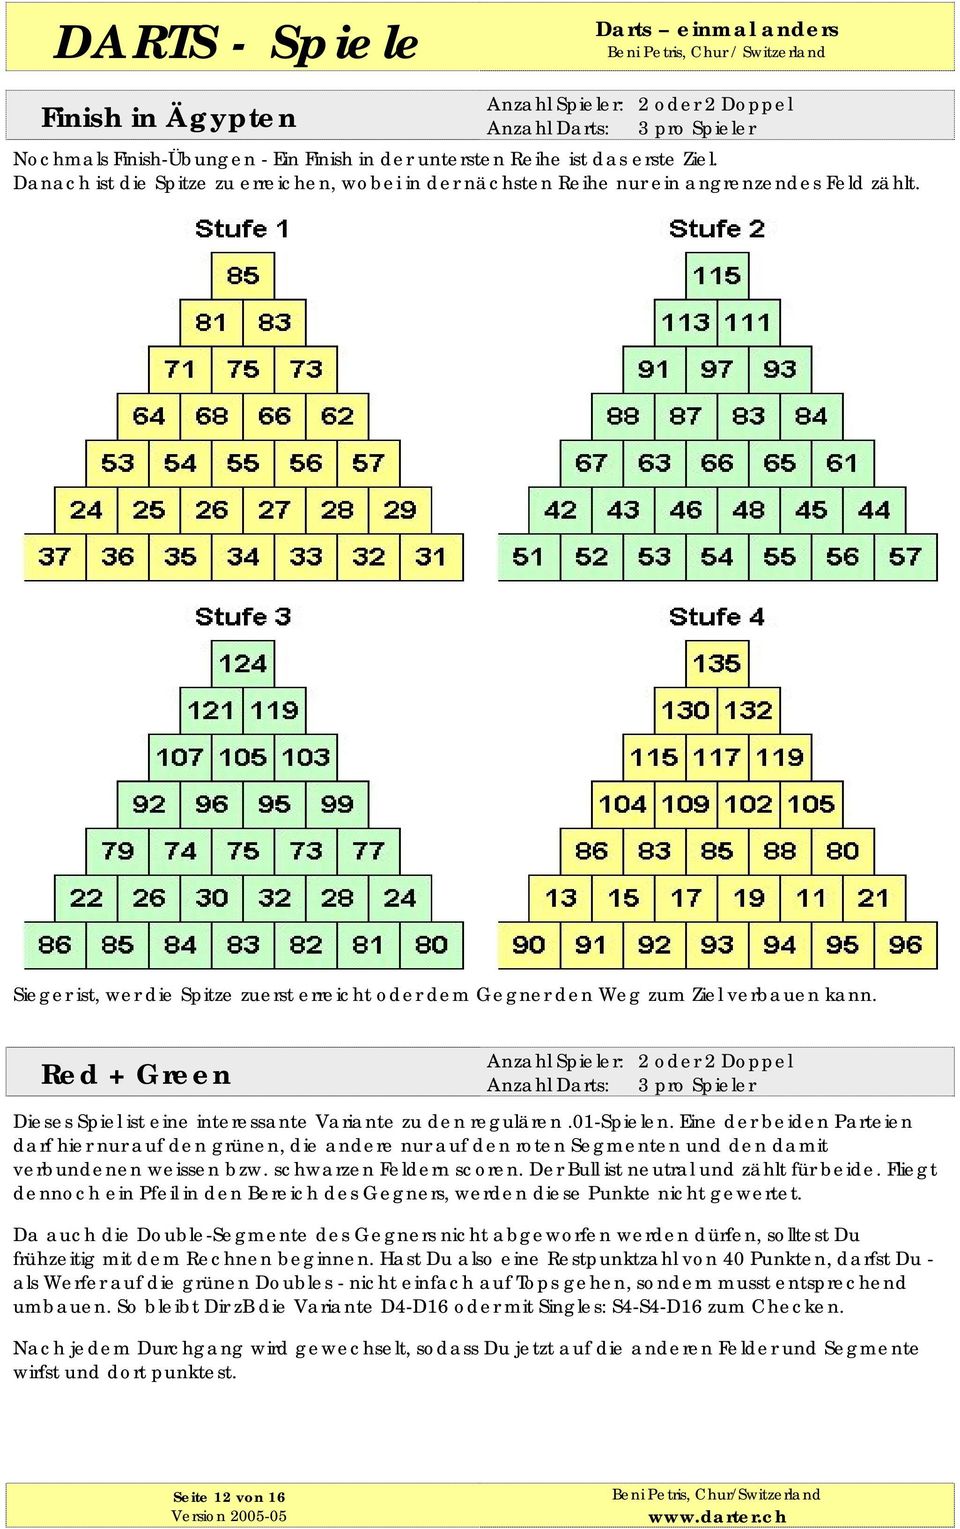 Red + Green Anzahl Spieler: 2 oder 2 Doppel Dieses Spiel ist eine interessante Variante zu den regulären.01-spielen.